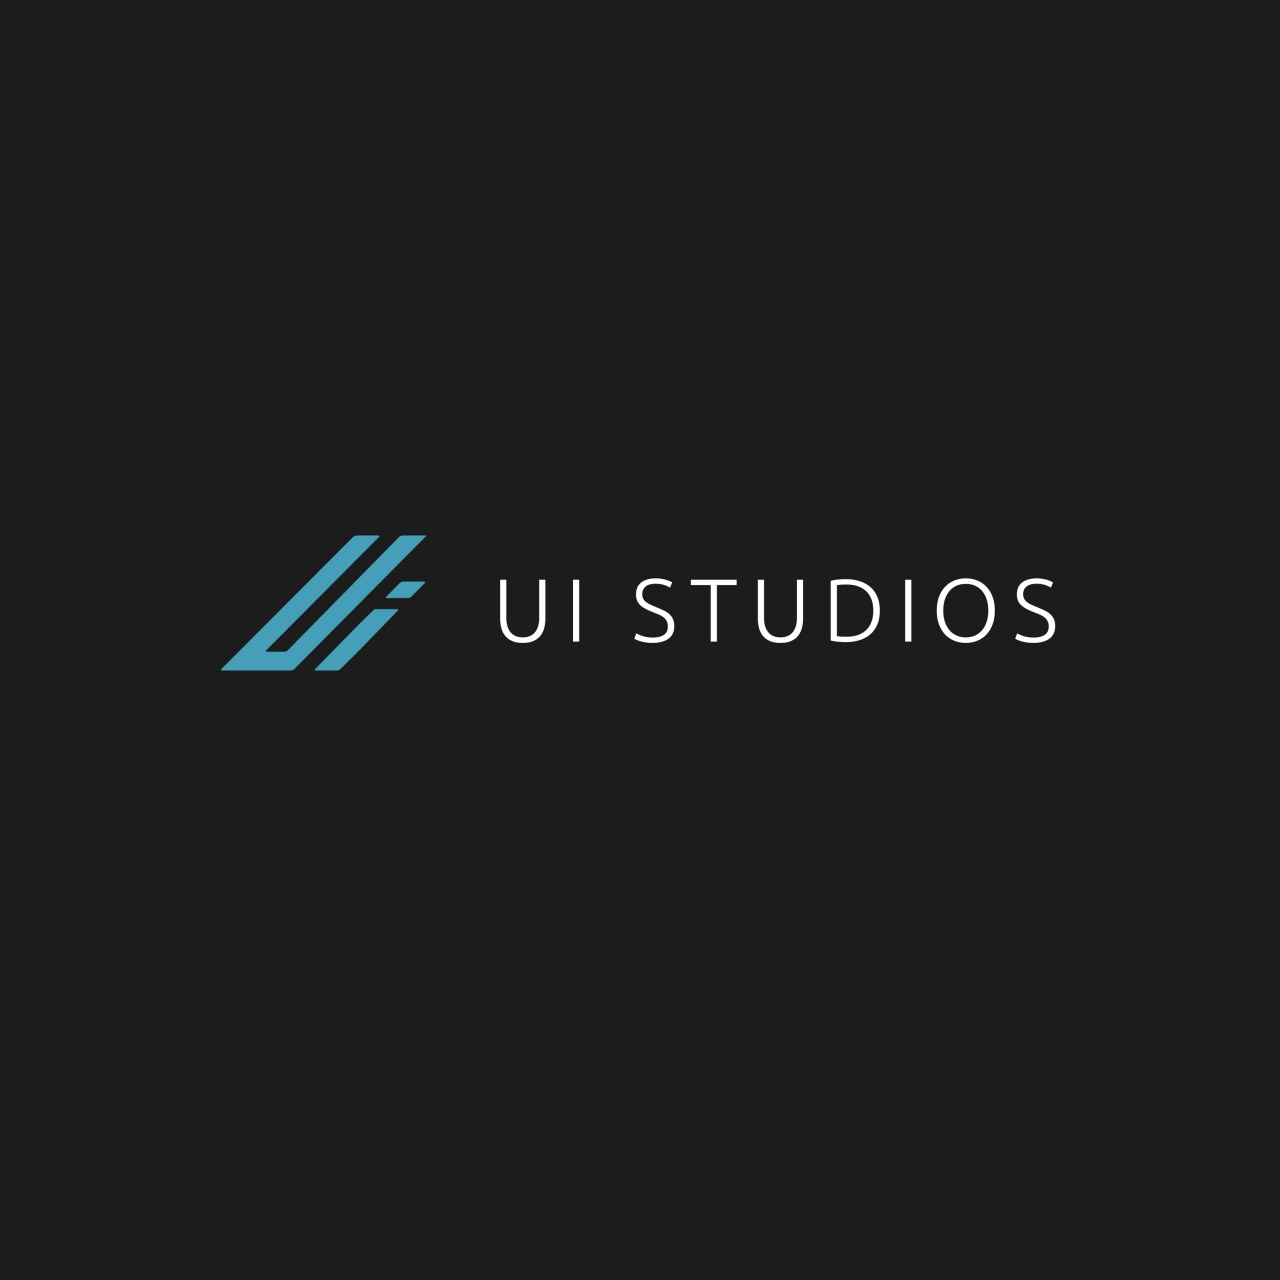 UI Studios